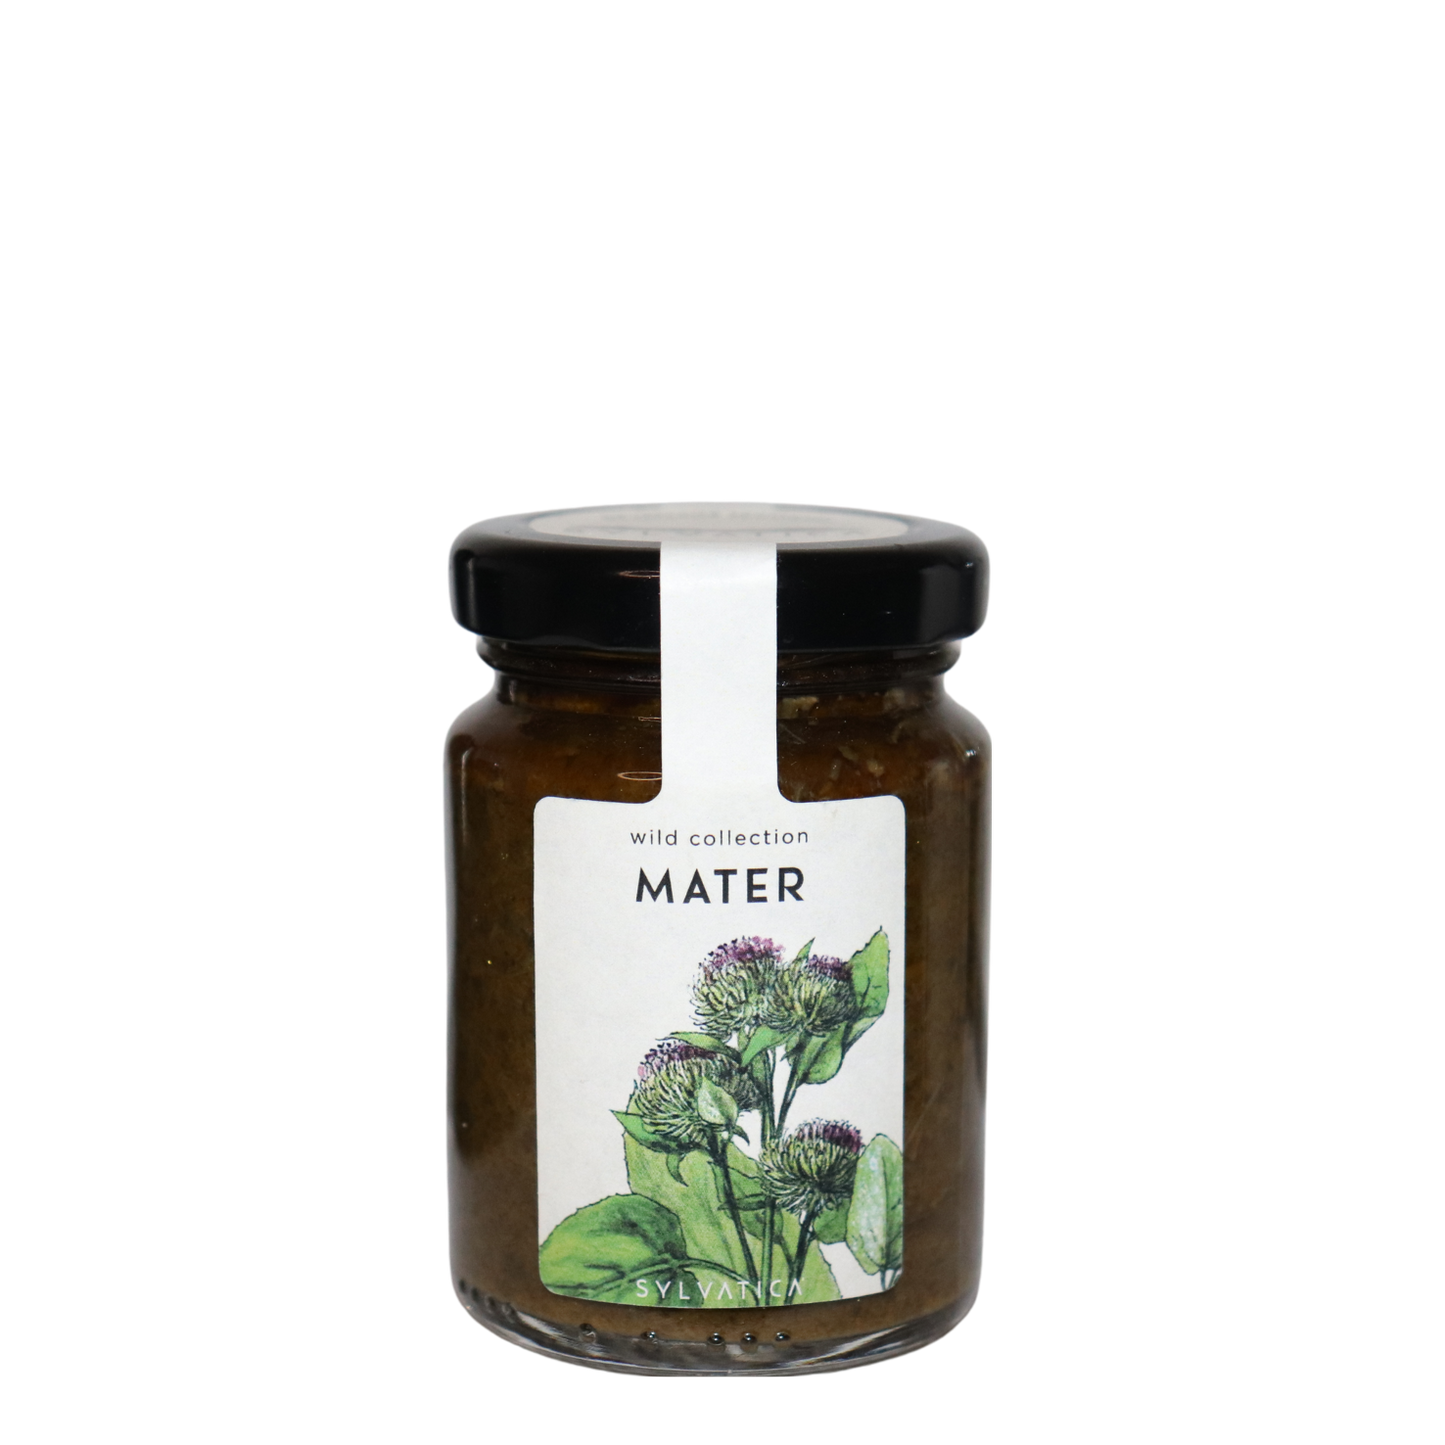 MATER alpine herb cream - Sylvatica